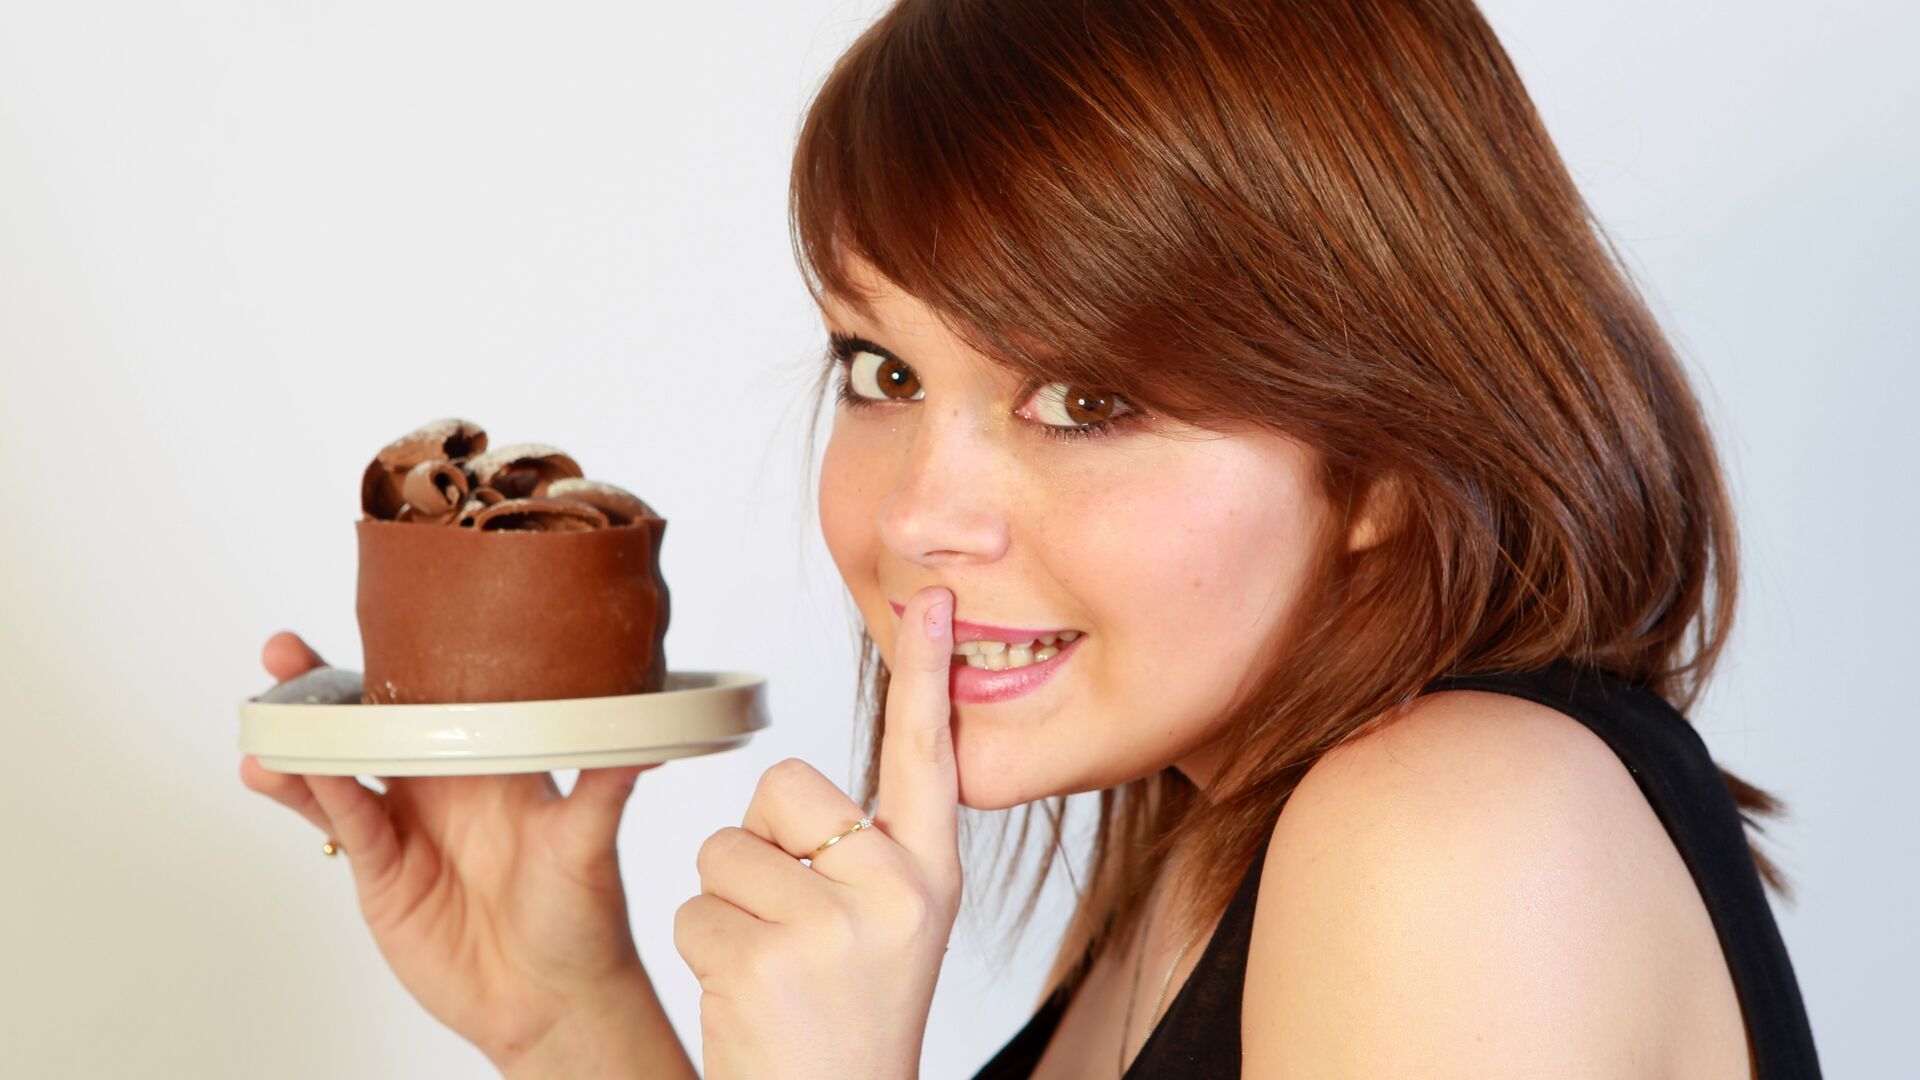 Фото хочется. Девушка ест пирожное. Девушка и сладкое. Торт для женщины. Тортики для девочек.